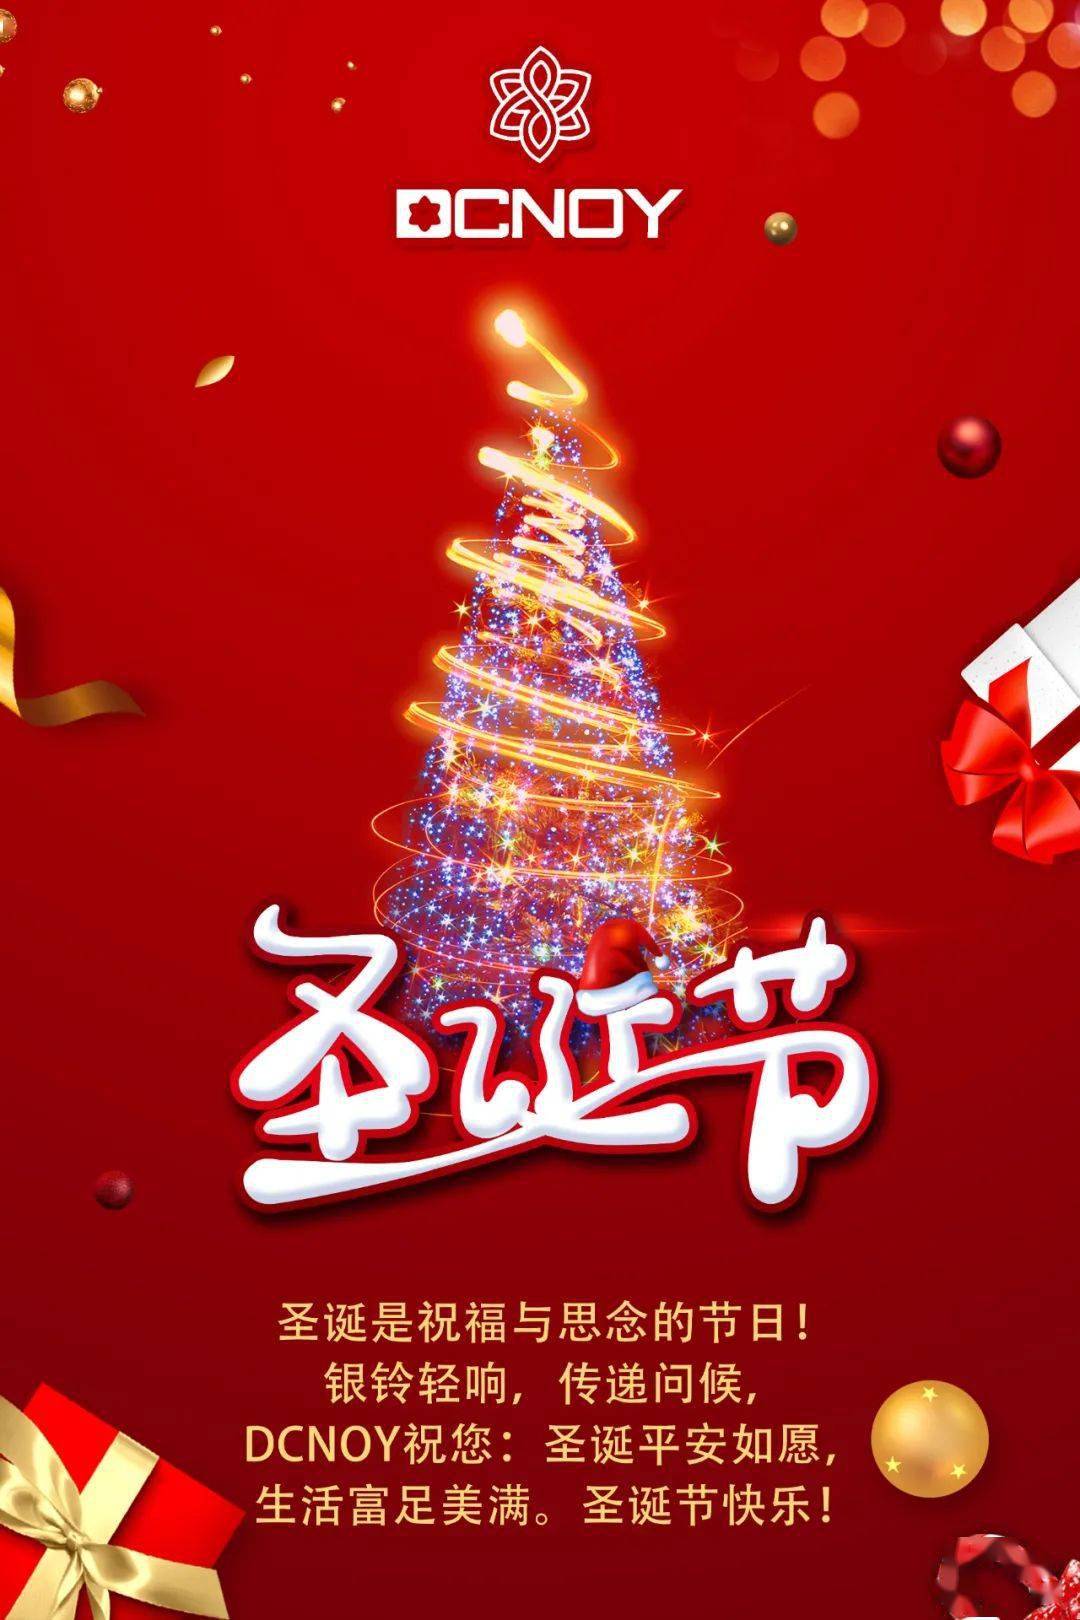 上海圣诞节：文化与情感的盛大交融，感受节日的独特魅力